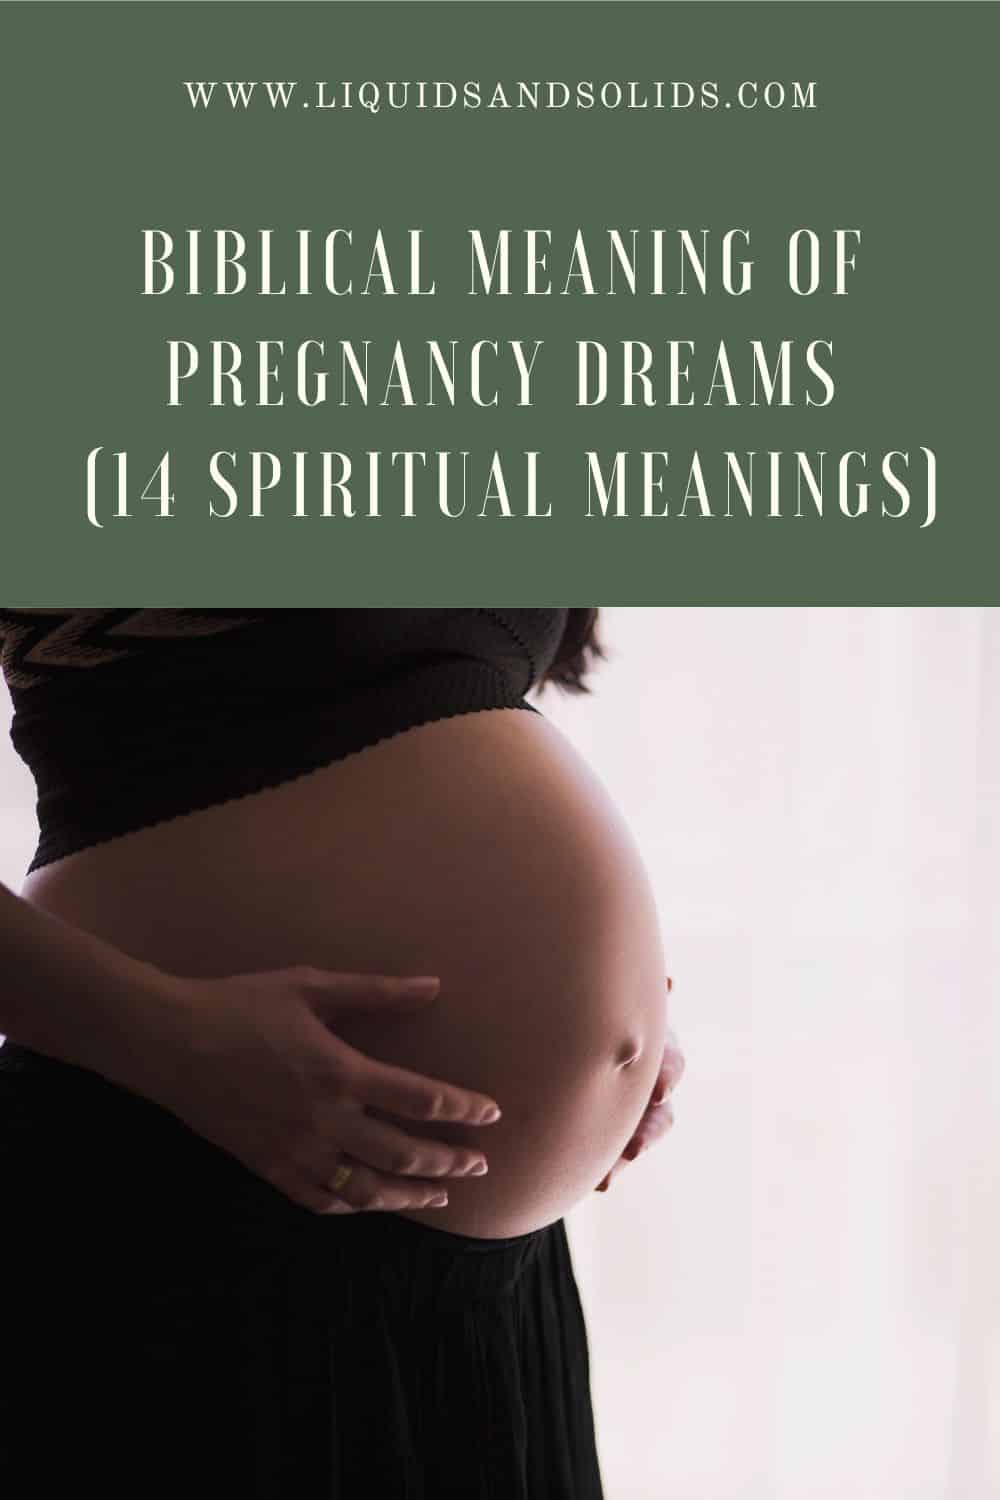  المعنى الكتابي لأحلام الحمل (14 معاني روحية)